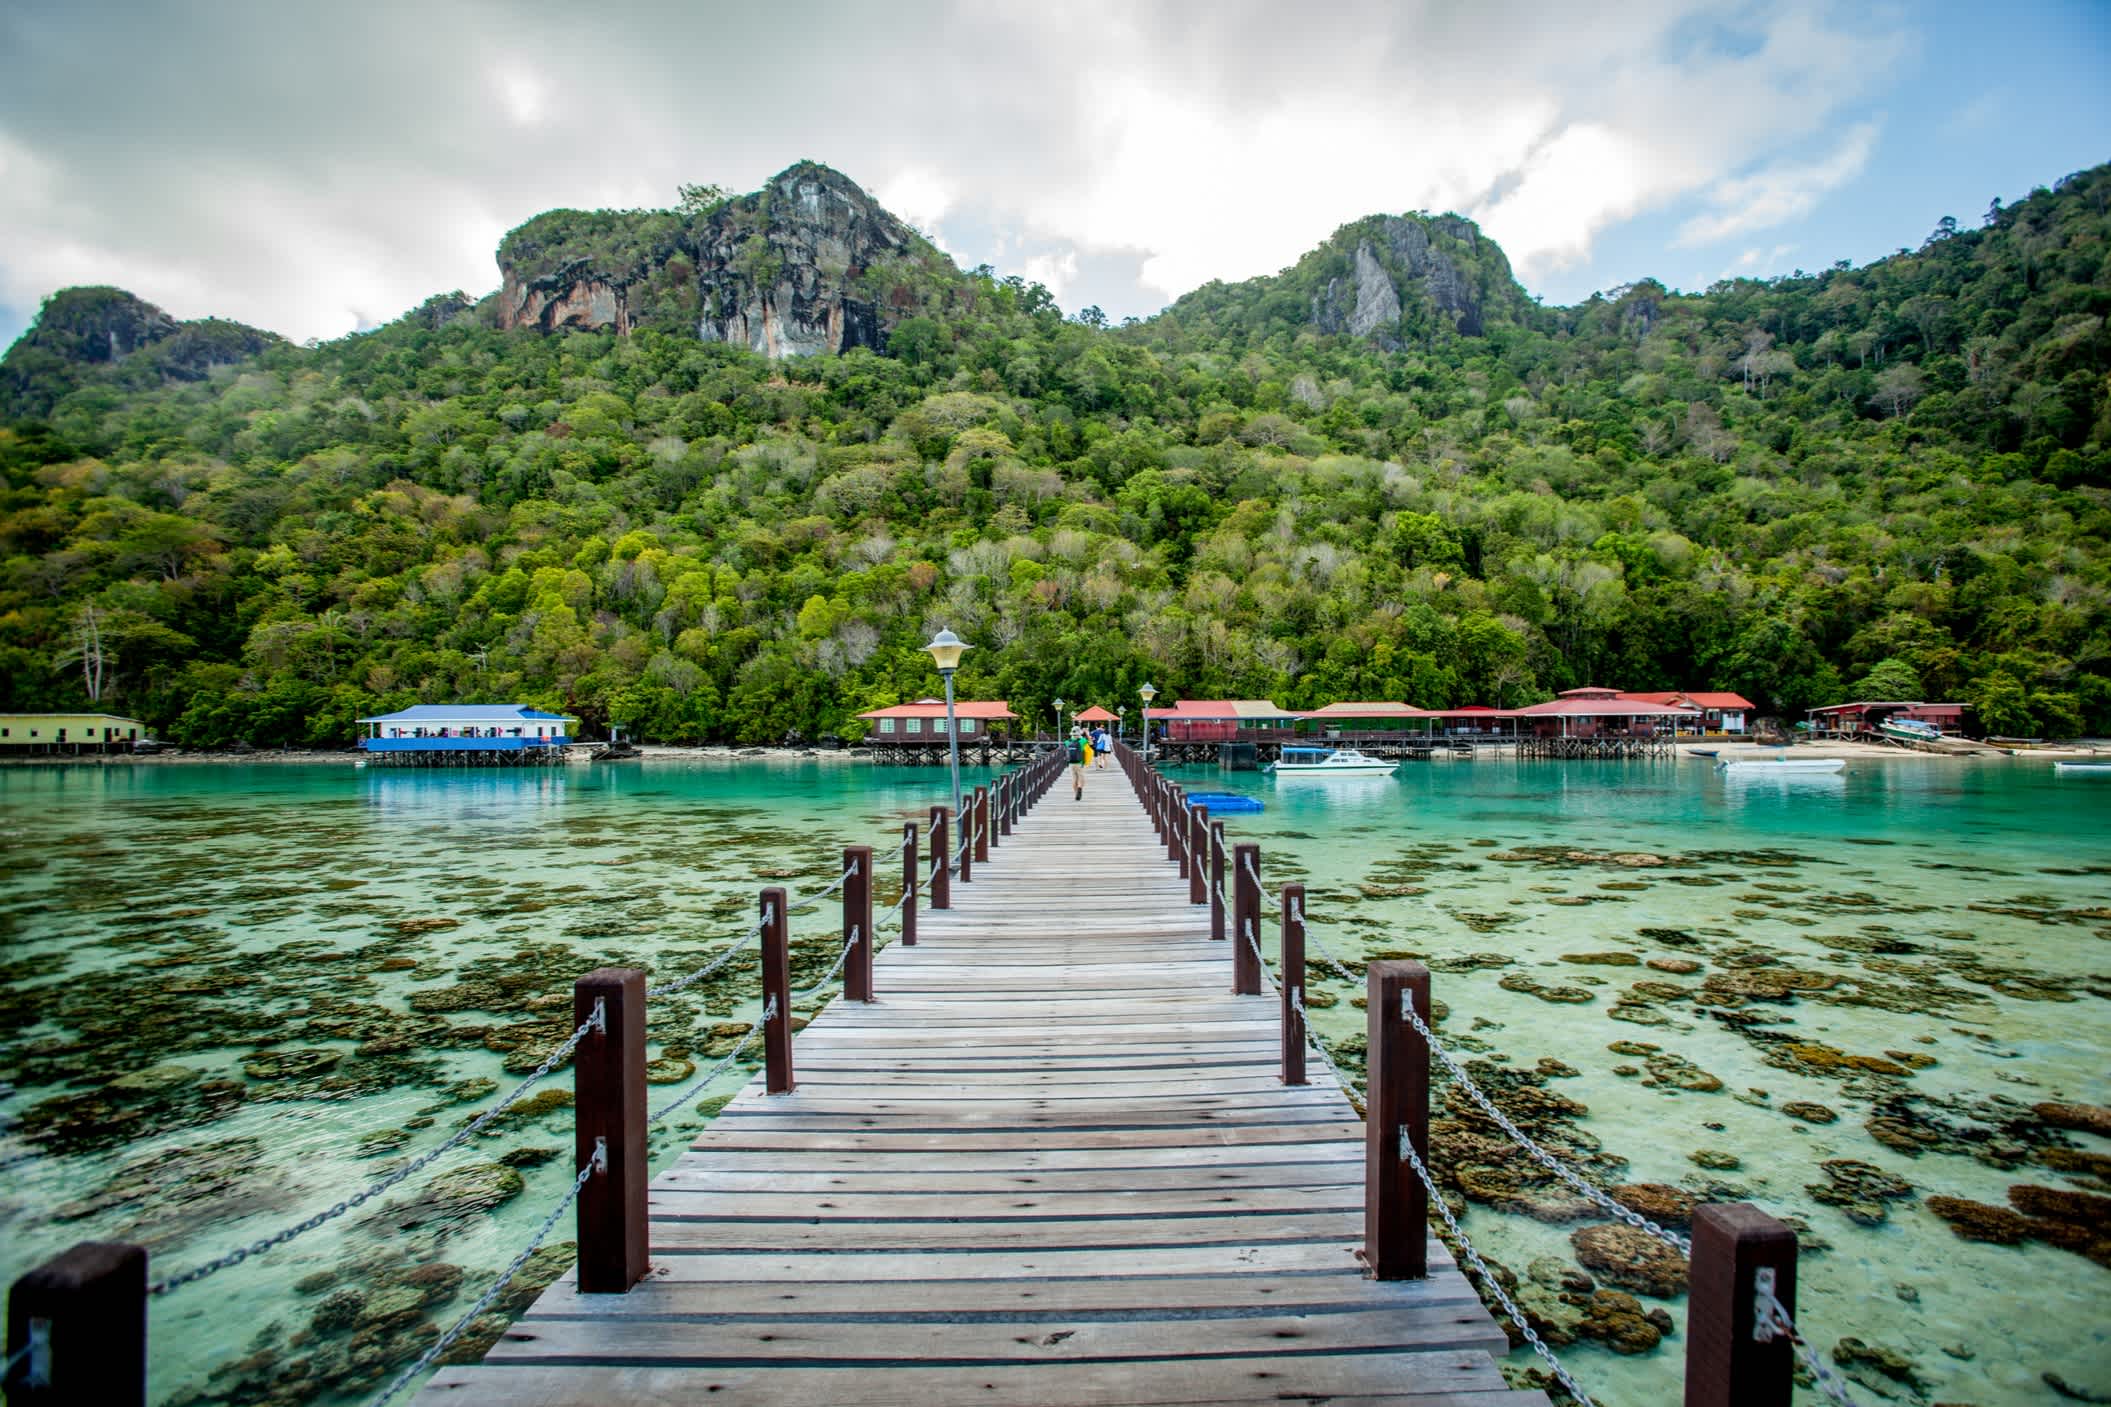 Pont en bois au-dessus d'une eau turquoise à Bornéo.